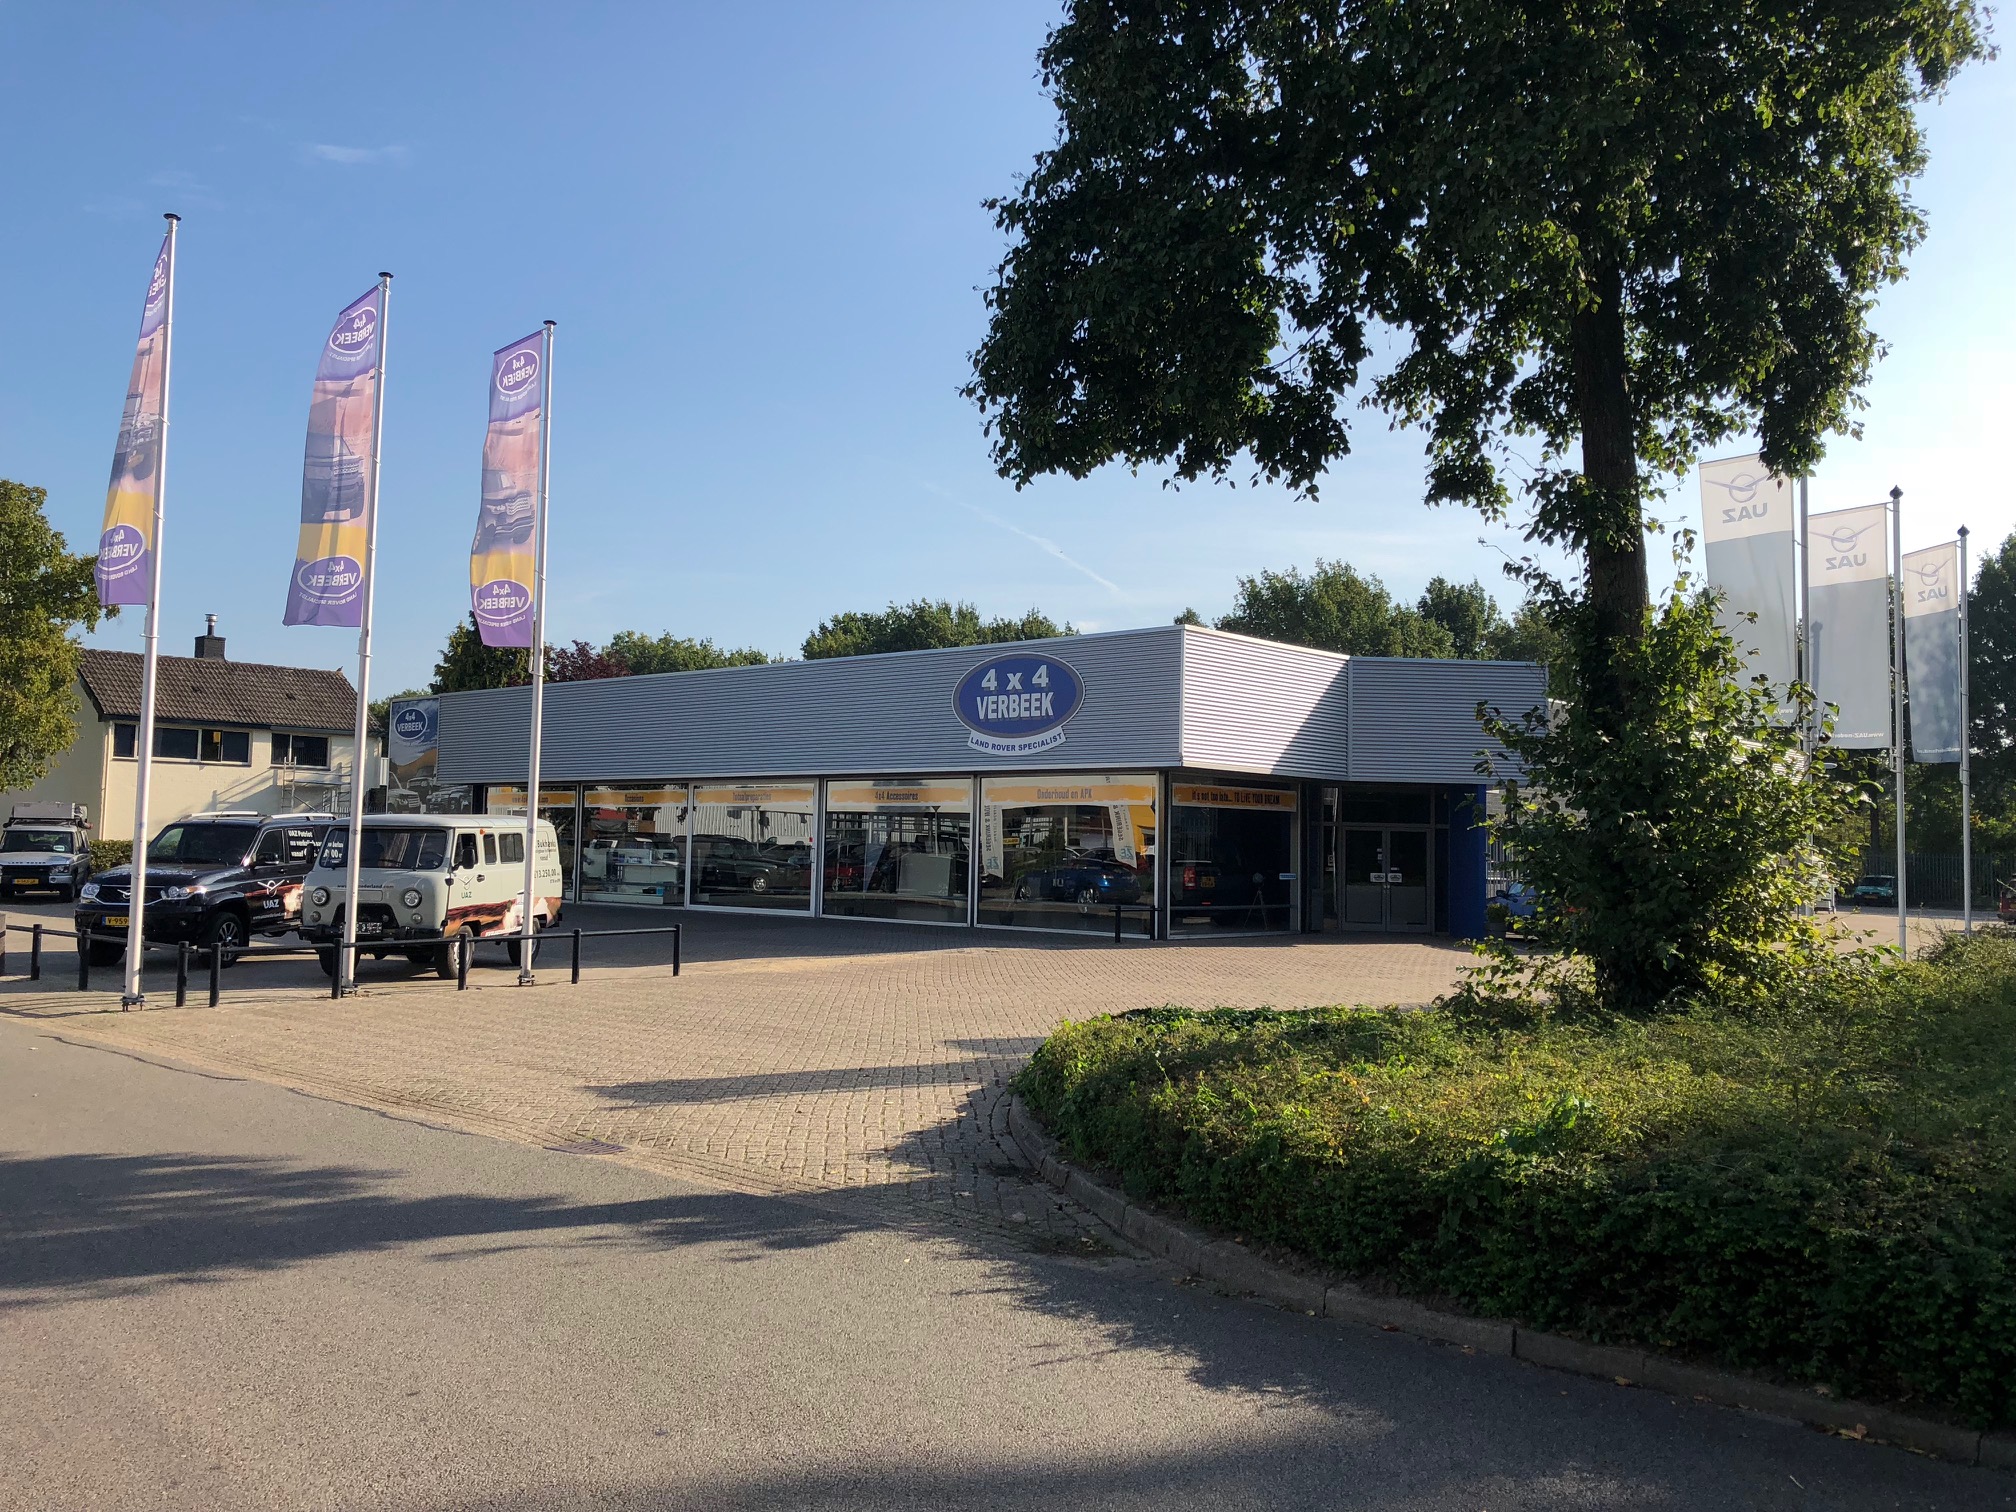 Verkoop- en werkplaats 4×4 Verbeek in Zutphen failliet